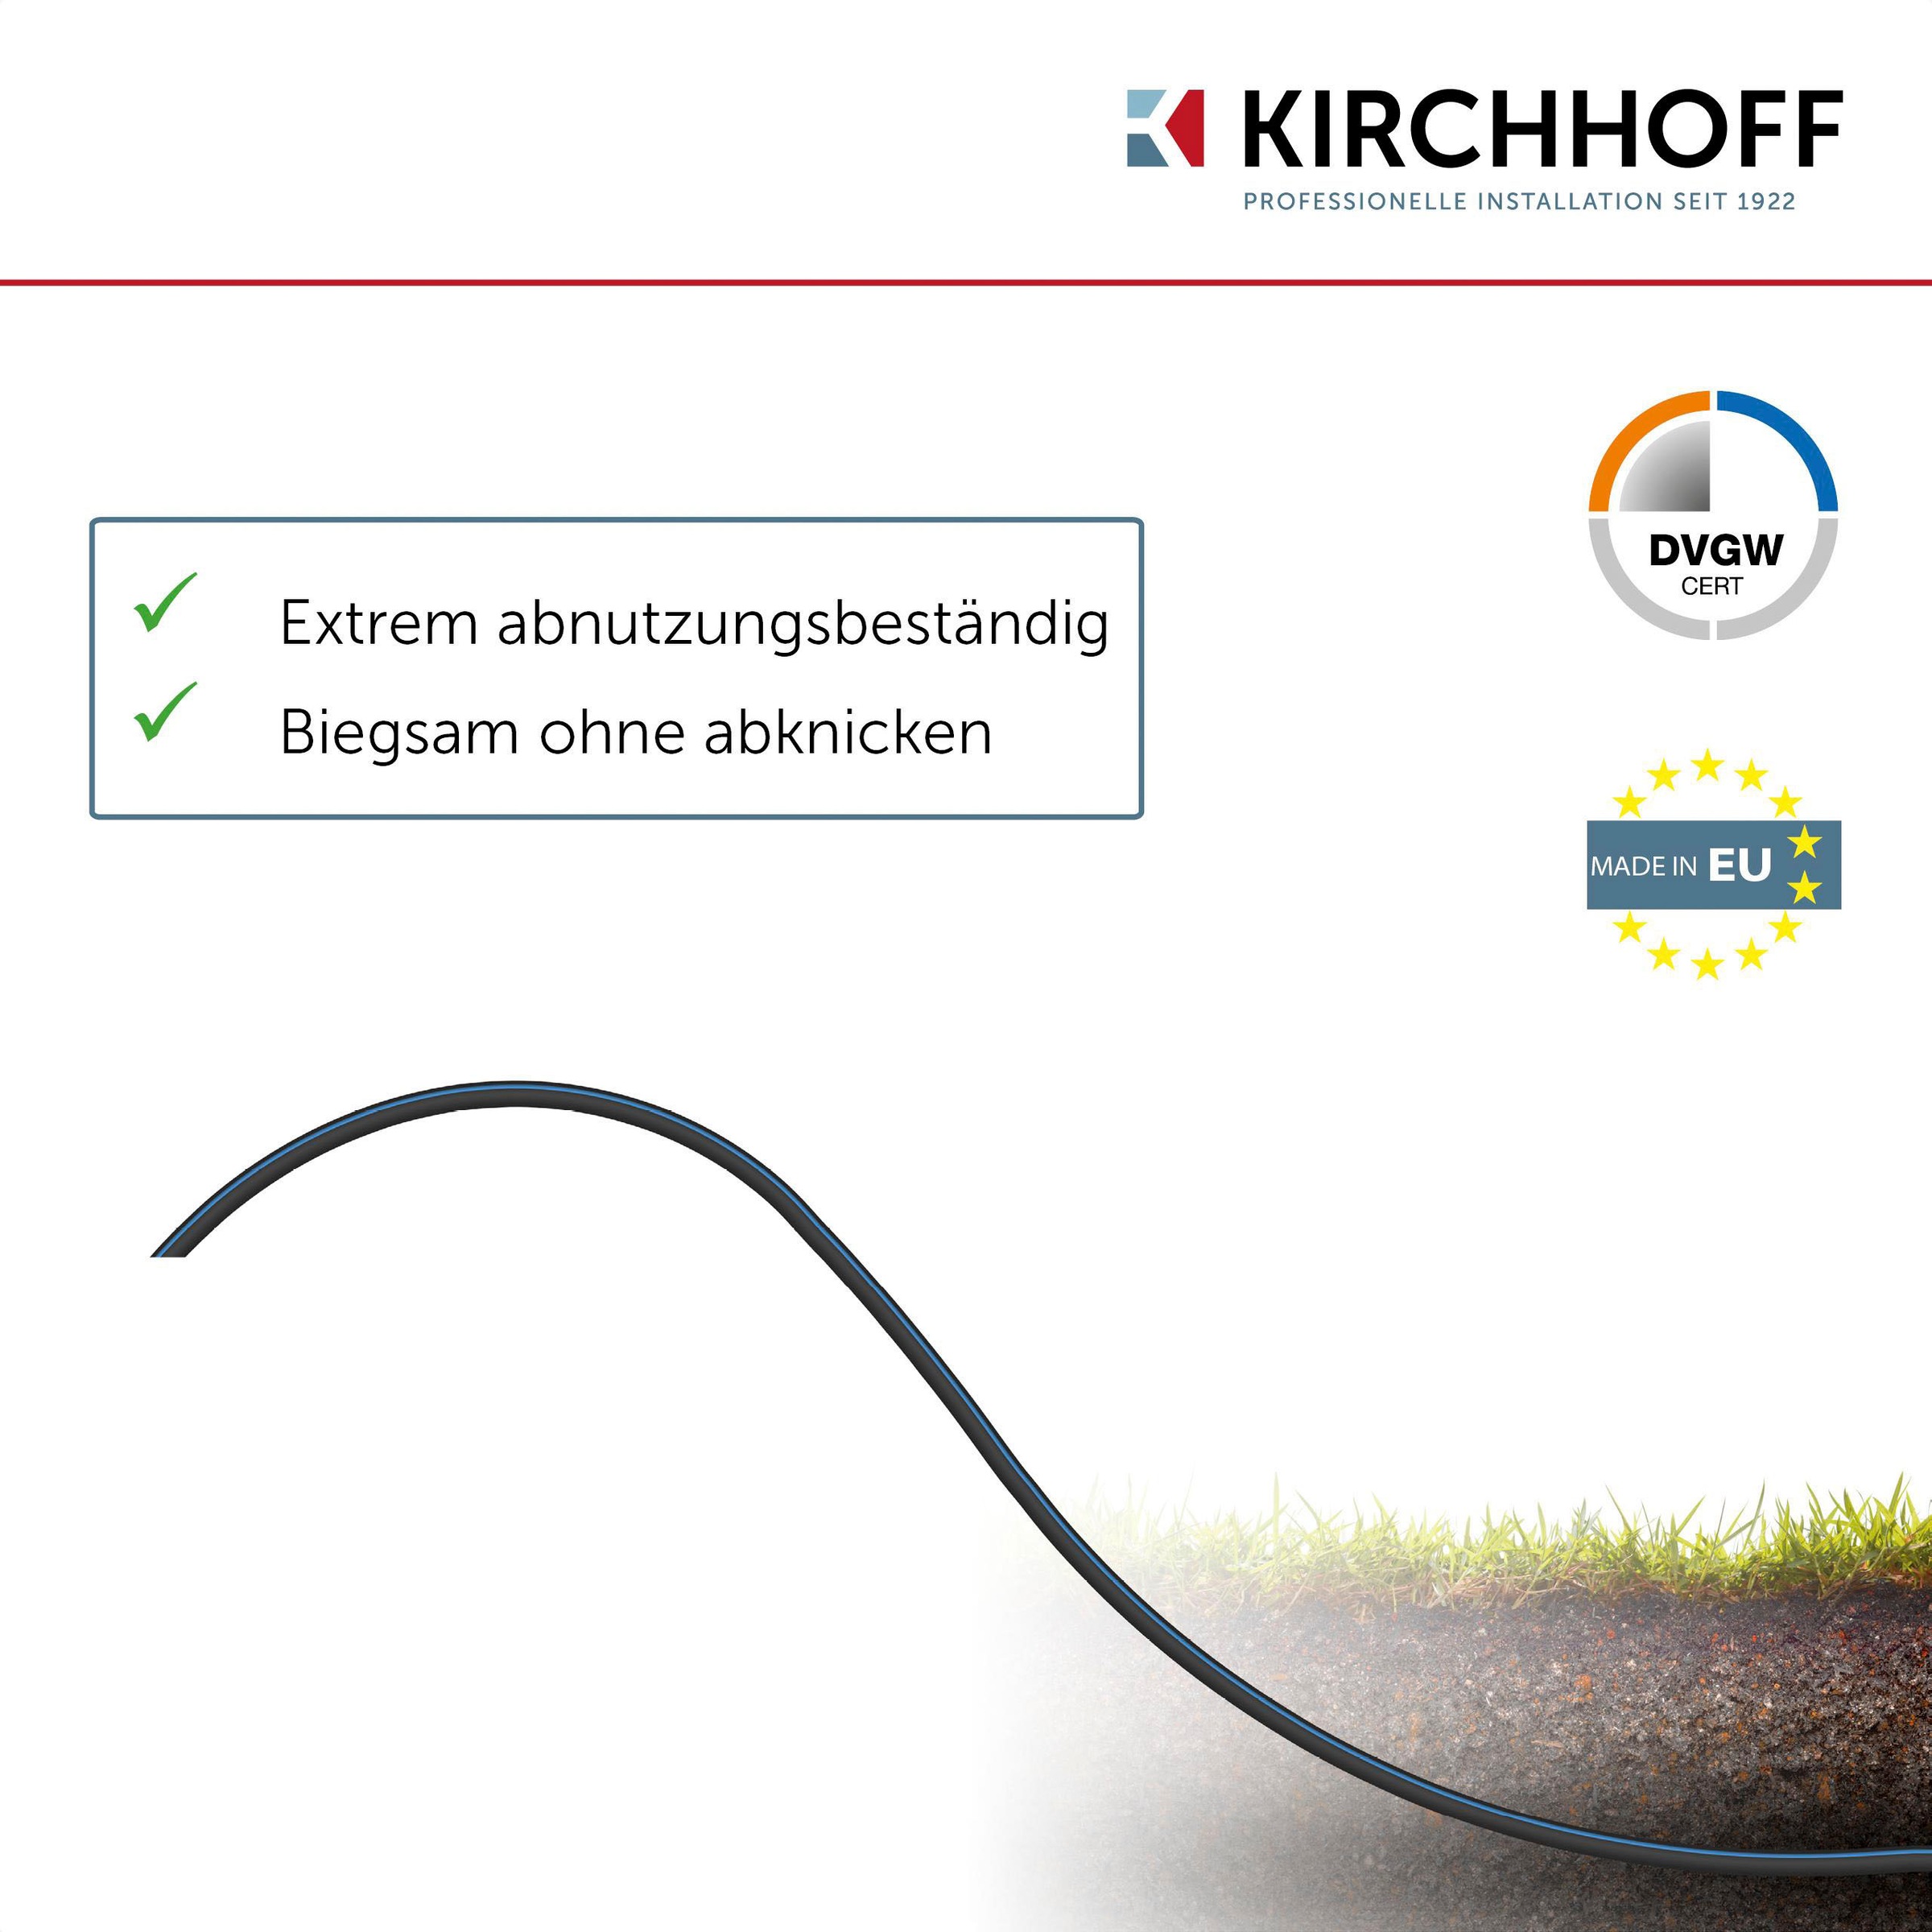 Kirchhoff Bewässerungsschlauch, Wasserleitung Gartenbewässerung 32 mm x 50 m